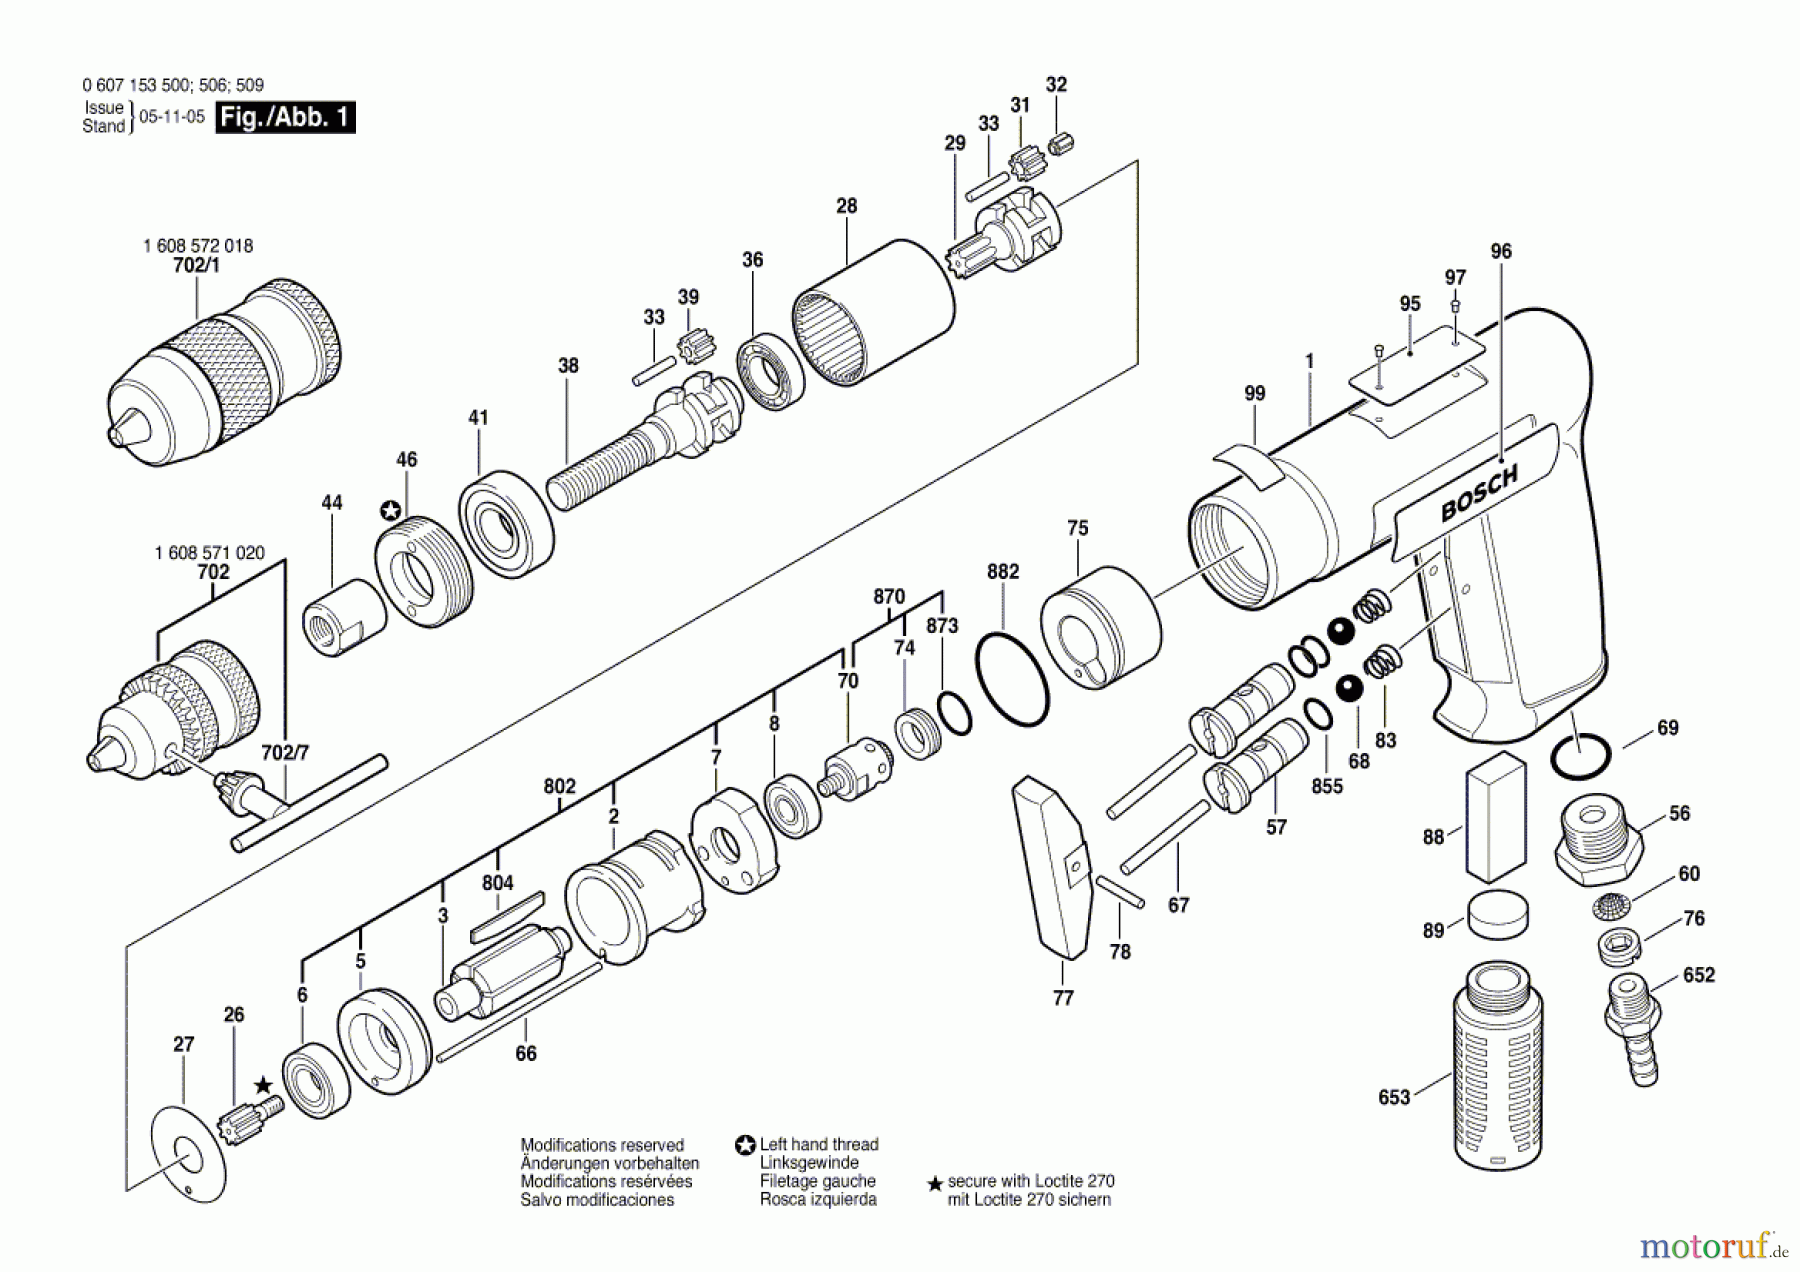  Bosch Werkzeug Bohrmaschine 180 WATT-SERIE Seite 1